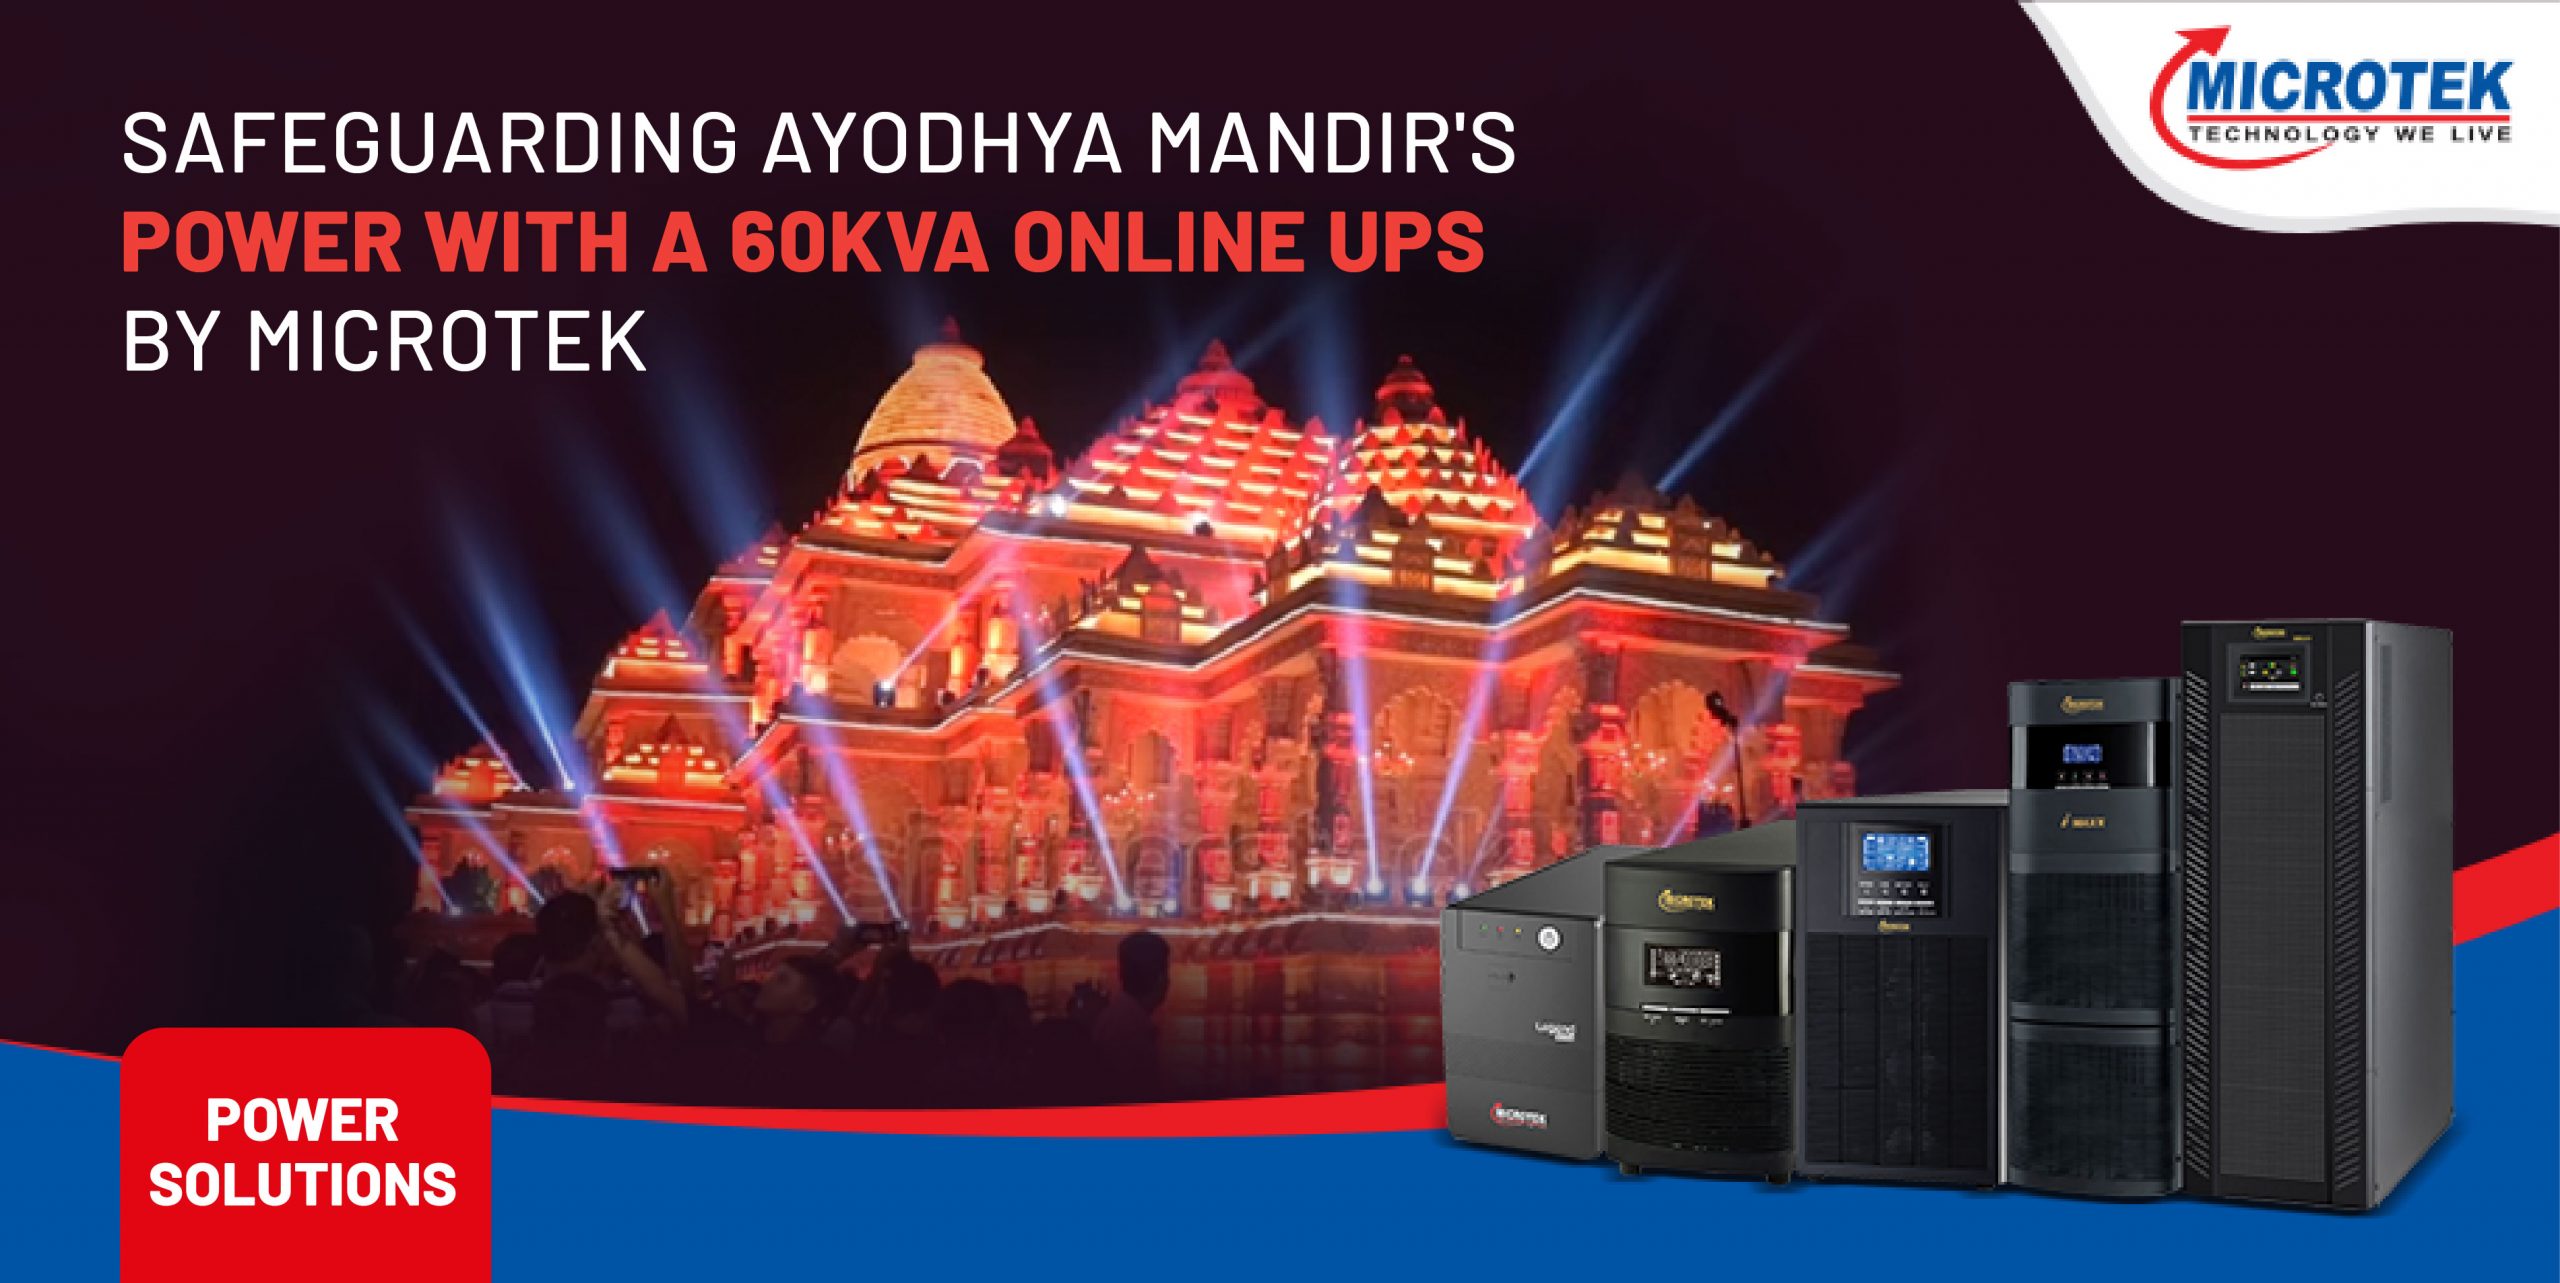 Safeguarding Ayodhya Ram Mandir’s Power with Microtek 60kVA Online UPS